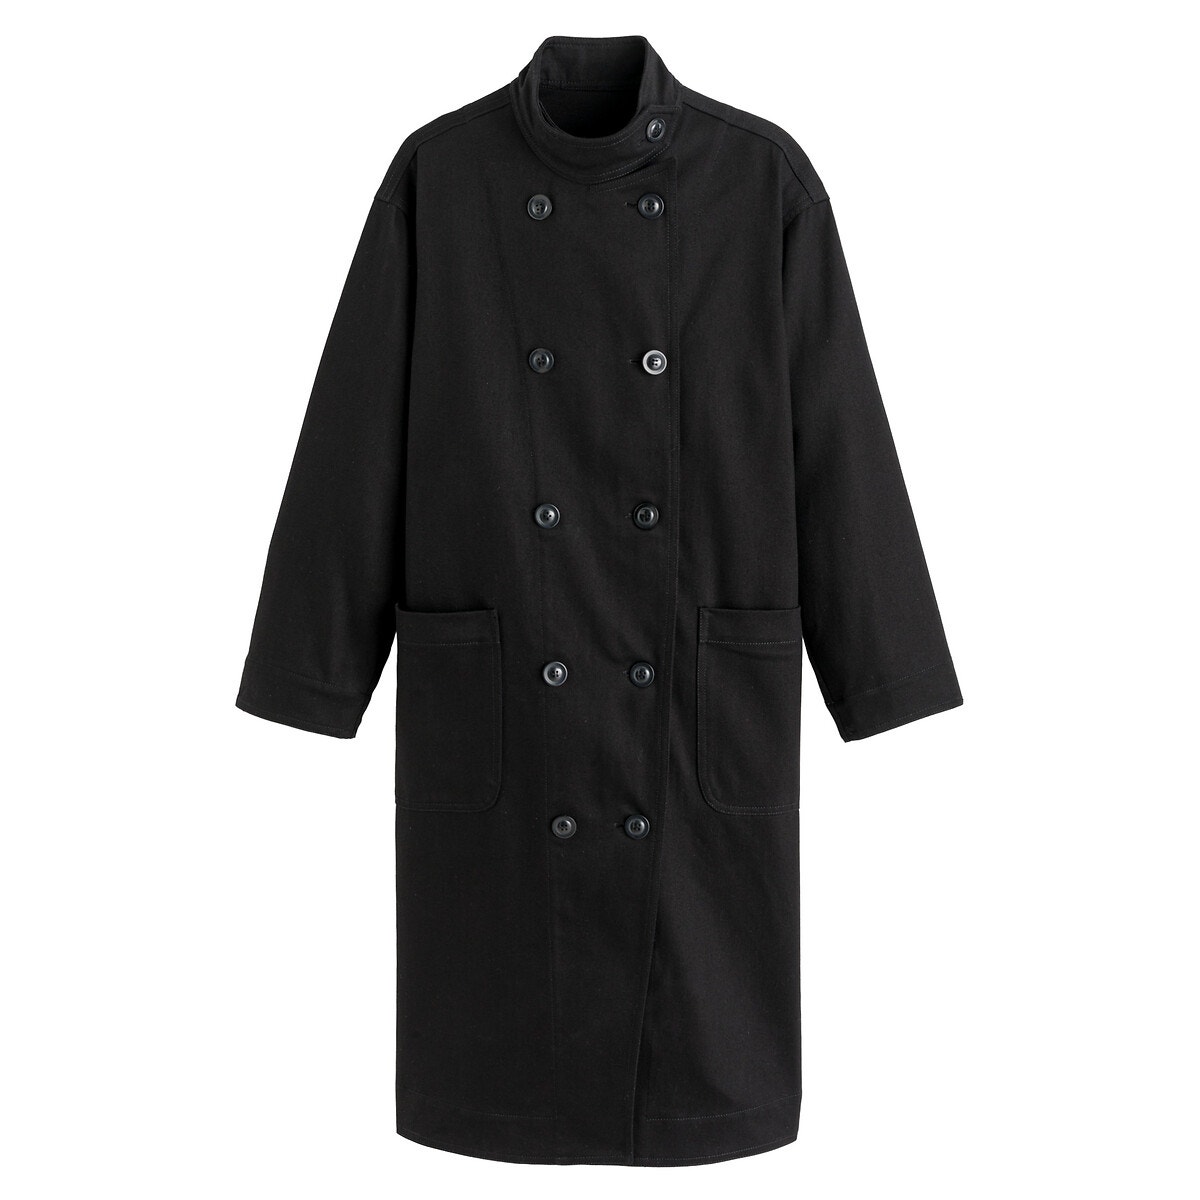 Παλτό με όρθιο γιακά και διπλό κούμπωμα